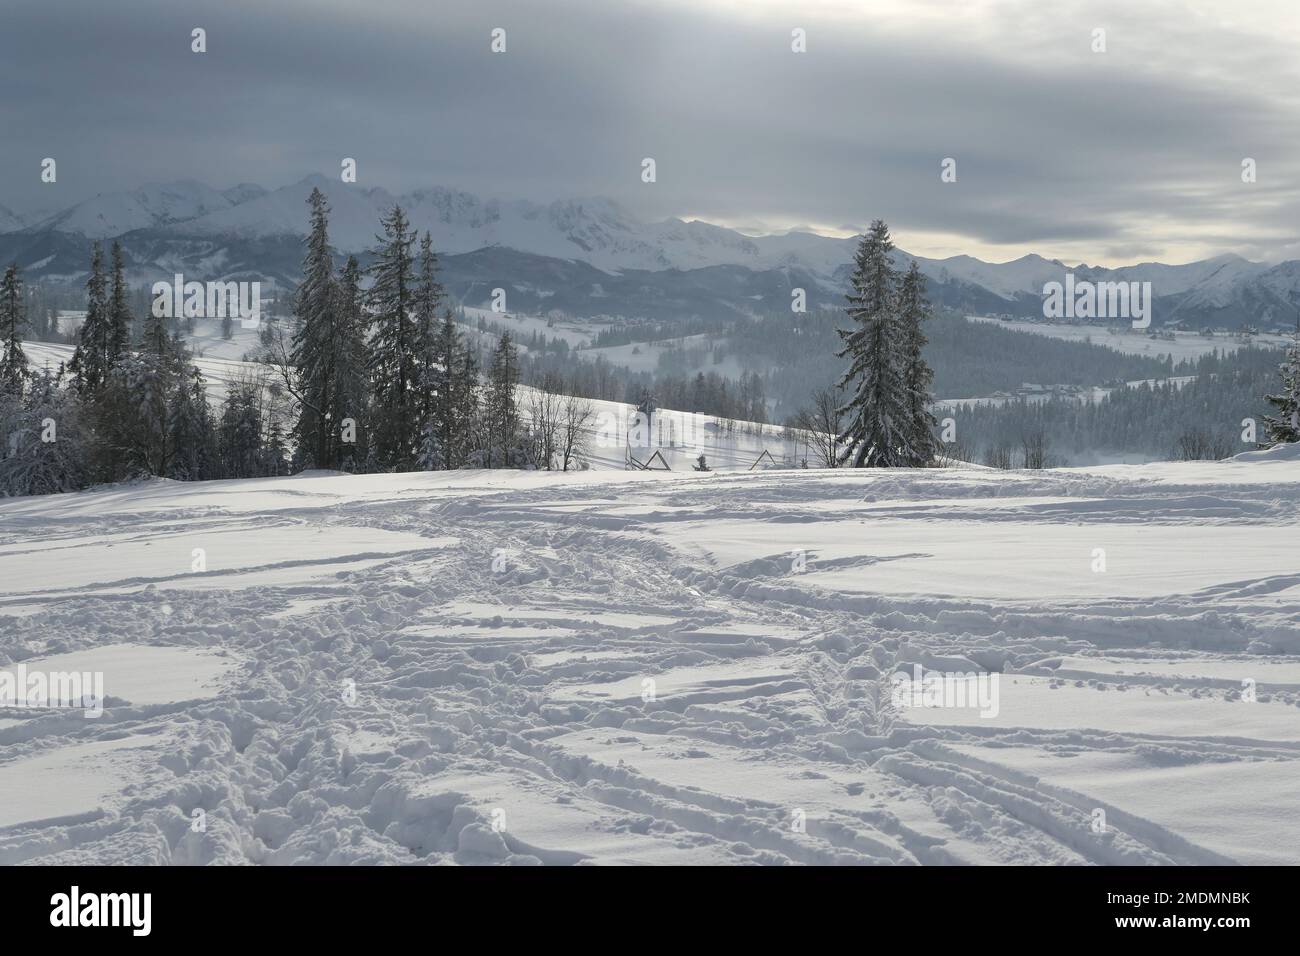 Winterwunderland in polnischen Bergen. Bialka Tatrzanska mit Blick auf das Tatra-Gebirge. Schneehintergrund. Stockfoto